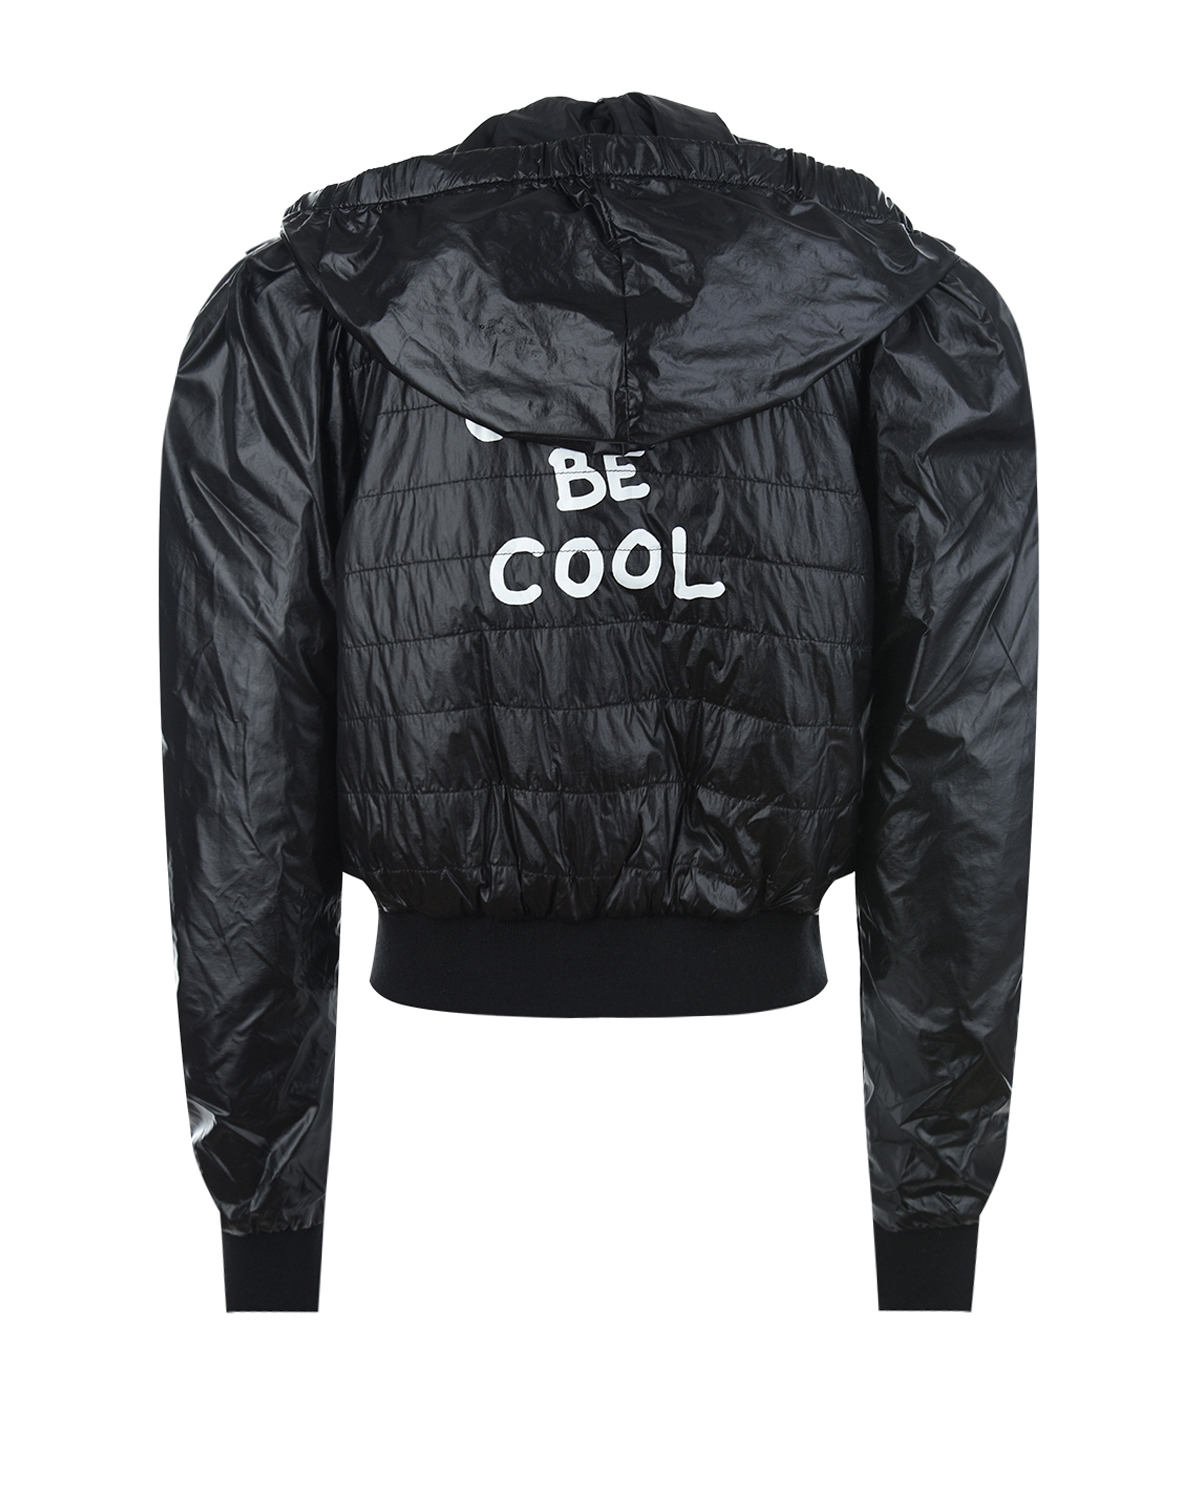 Черная куртка "Just be cool" c акцентными рукавами Monnalisa детская - фото 3